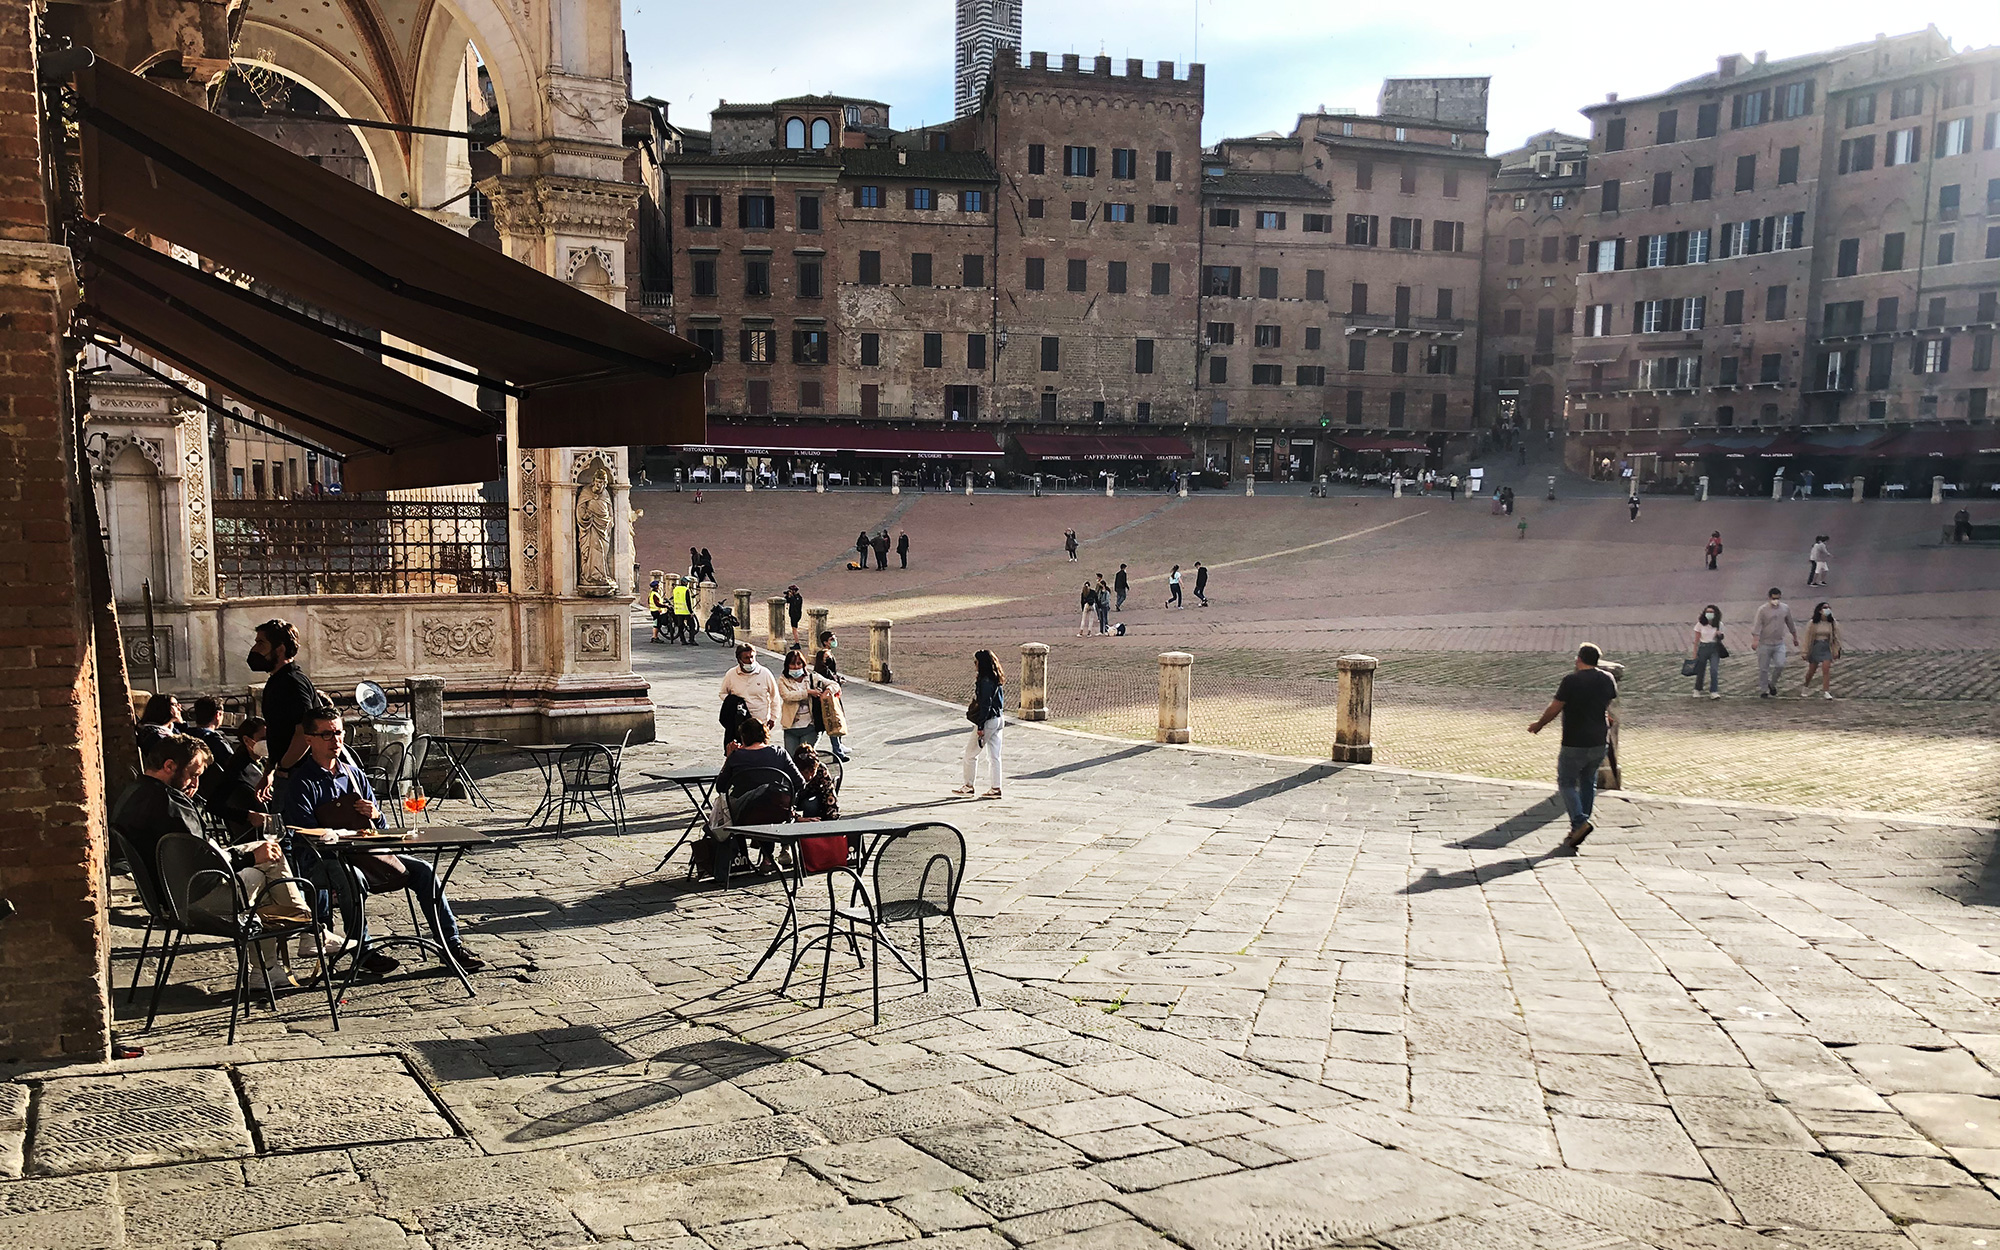 Anke Pedersen freut sich über den ungewohnten Anblick leerer Plätze und Straßen in Siena.